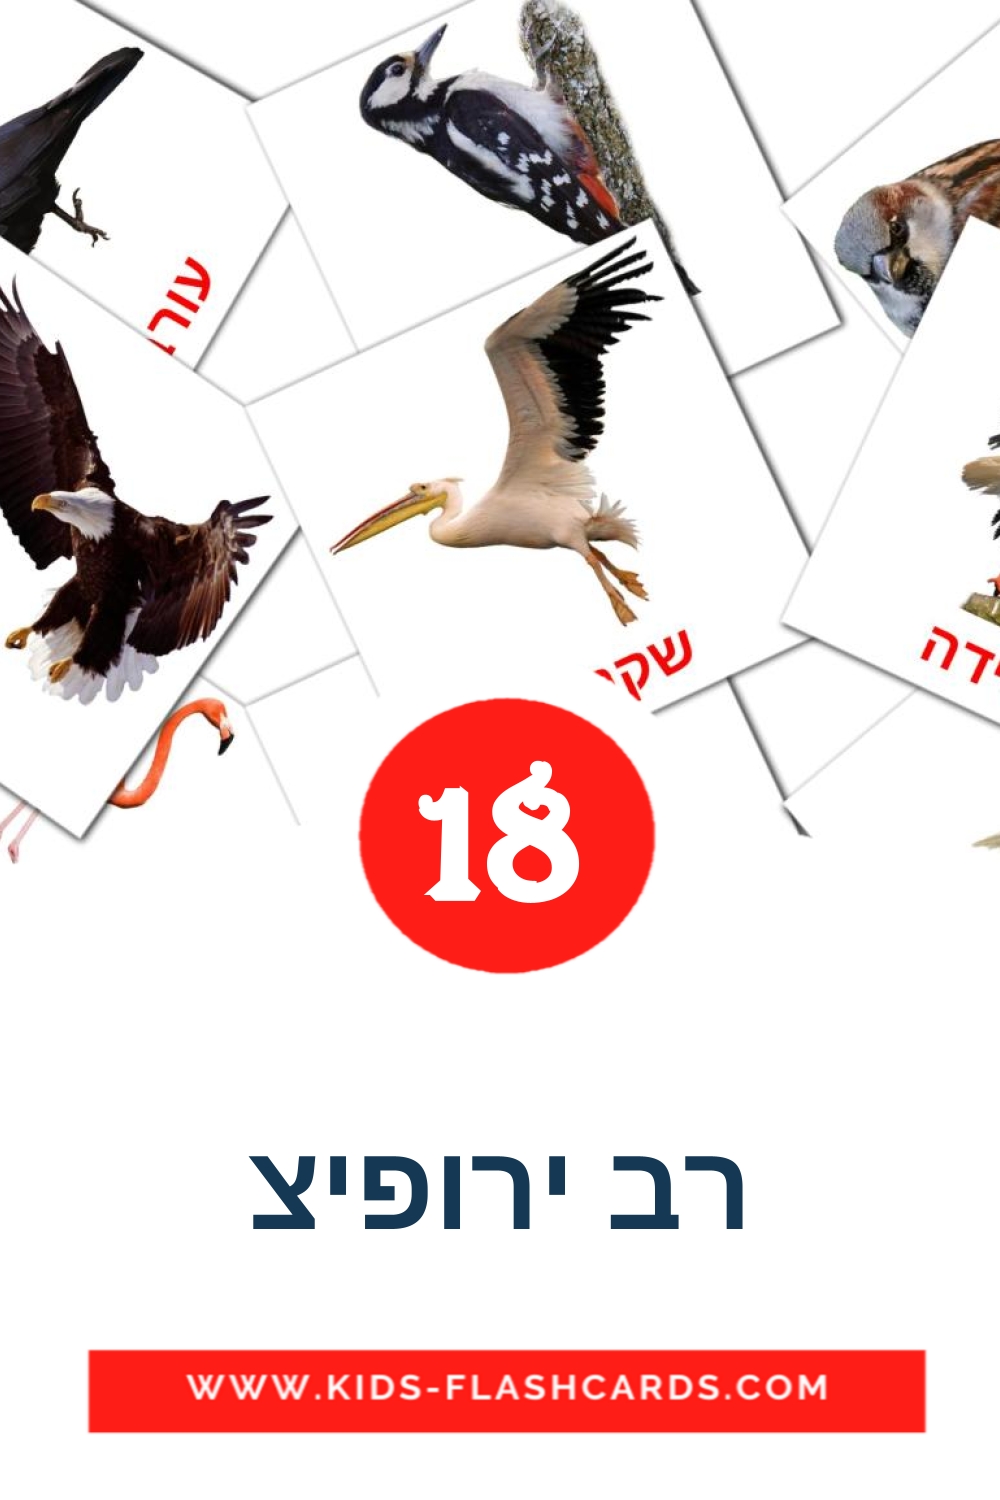 18 tarjetas didacticas de רב ירופיצ para el jardín de infancia en hebreo